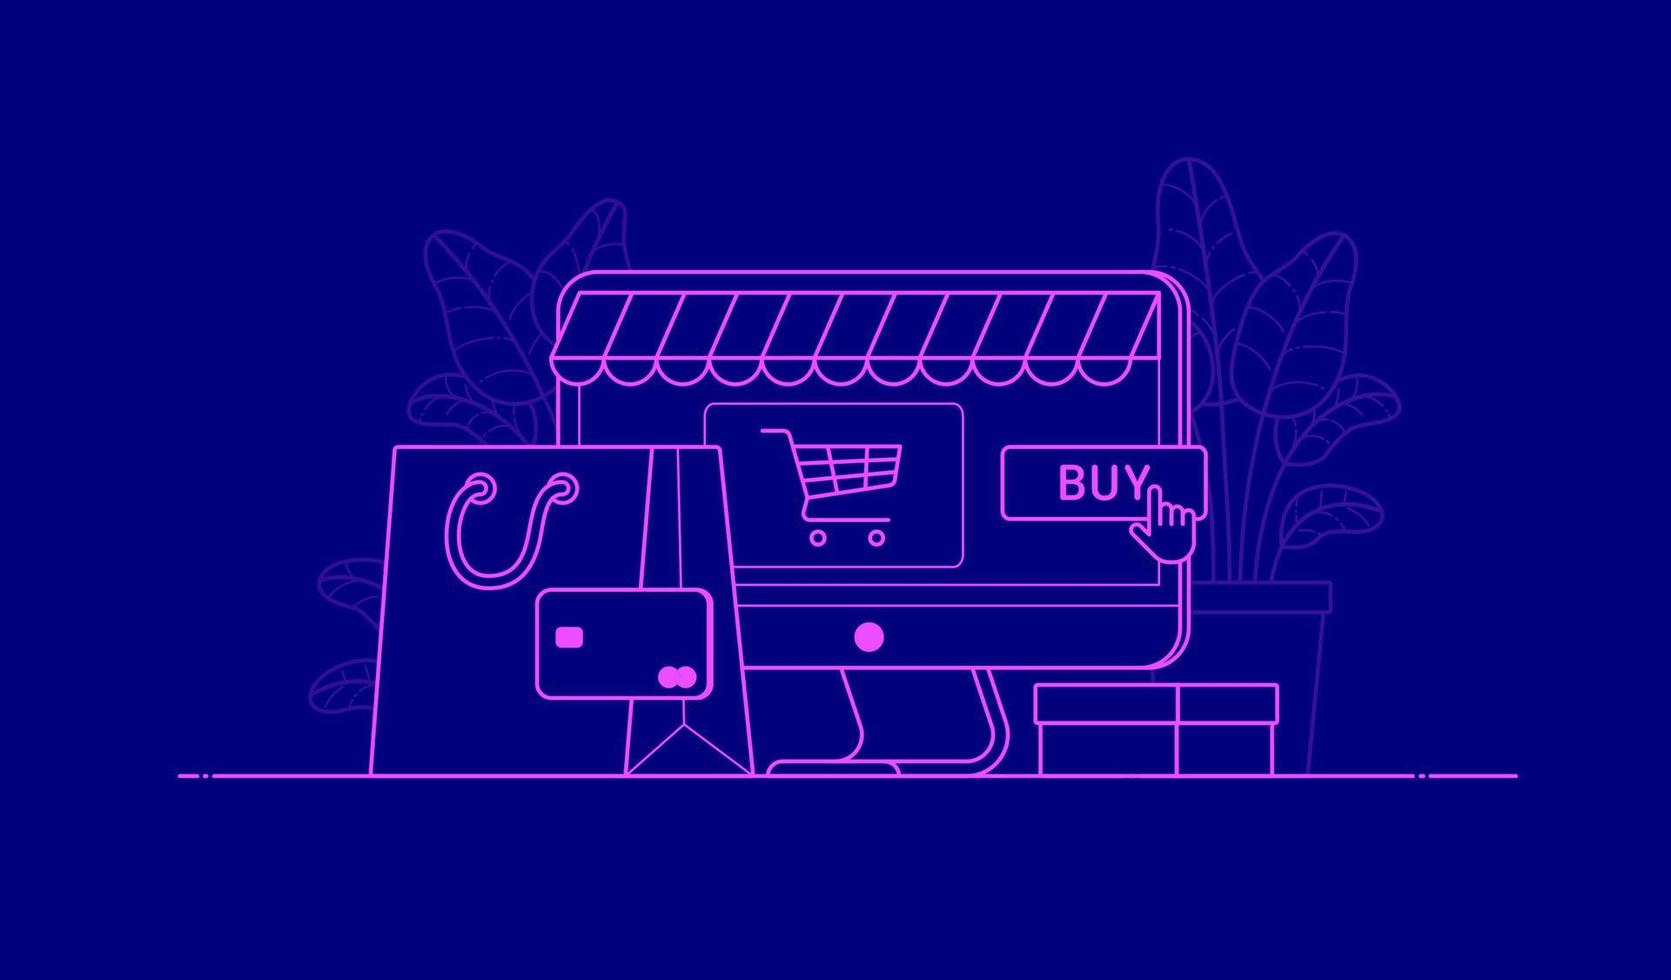 isolerad illustration för cyber måndag försäljning. rosa platta linjer på blå bakgrund. vektor mall i kontur grafisk skiss stil för rabatt banner, online shopping, webbplats, mobilapp, butik, butik, annons